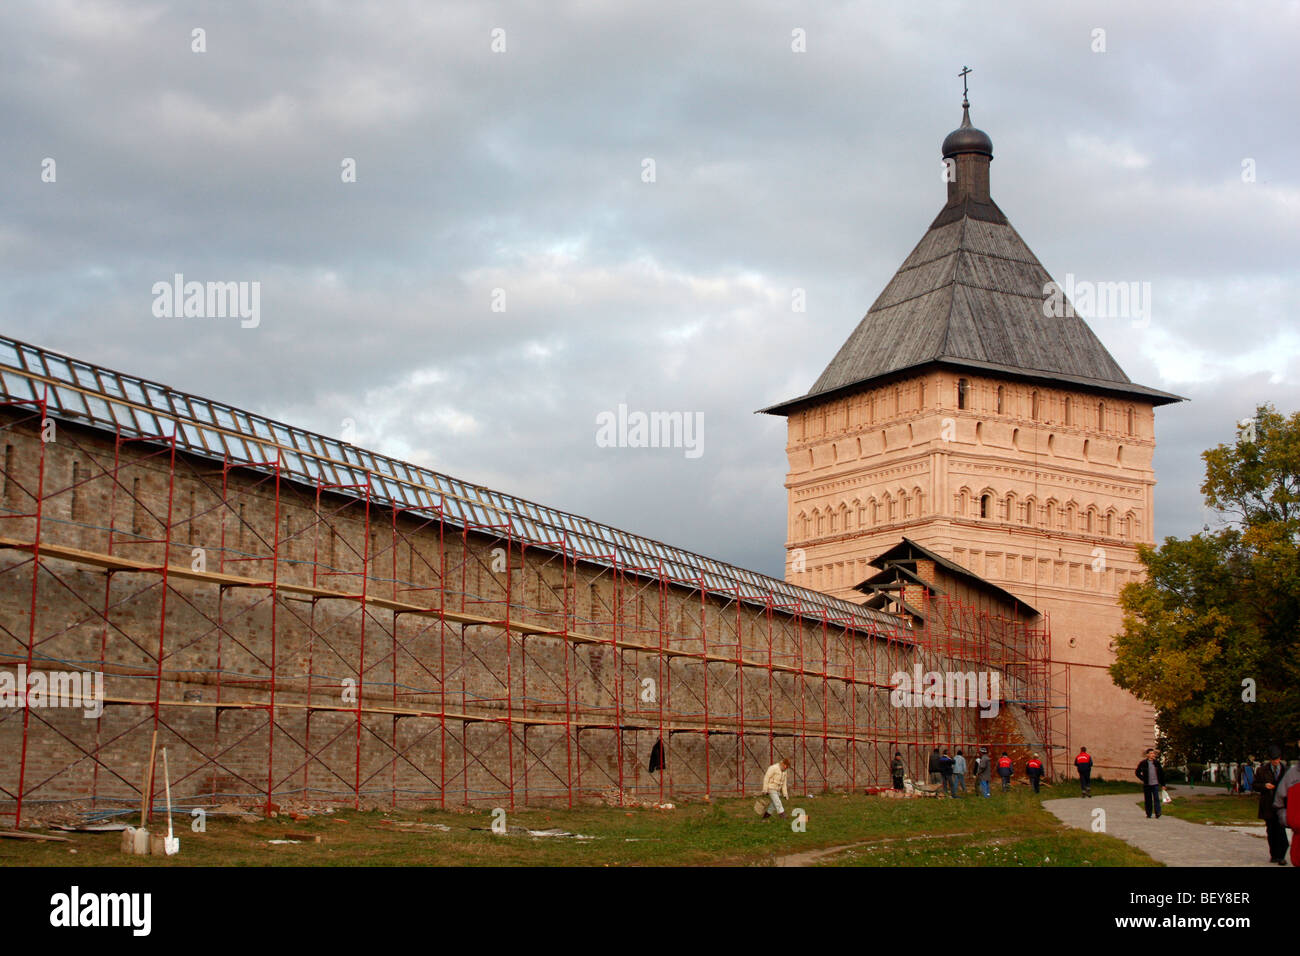 Le mur de maison Spaso yefimiev Savior-Yefimiev-(monastère), l'un des cinq monastères actuellement actif en Suzdal russie Banque D'Images